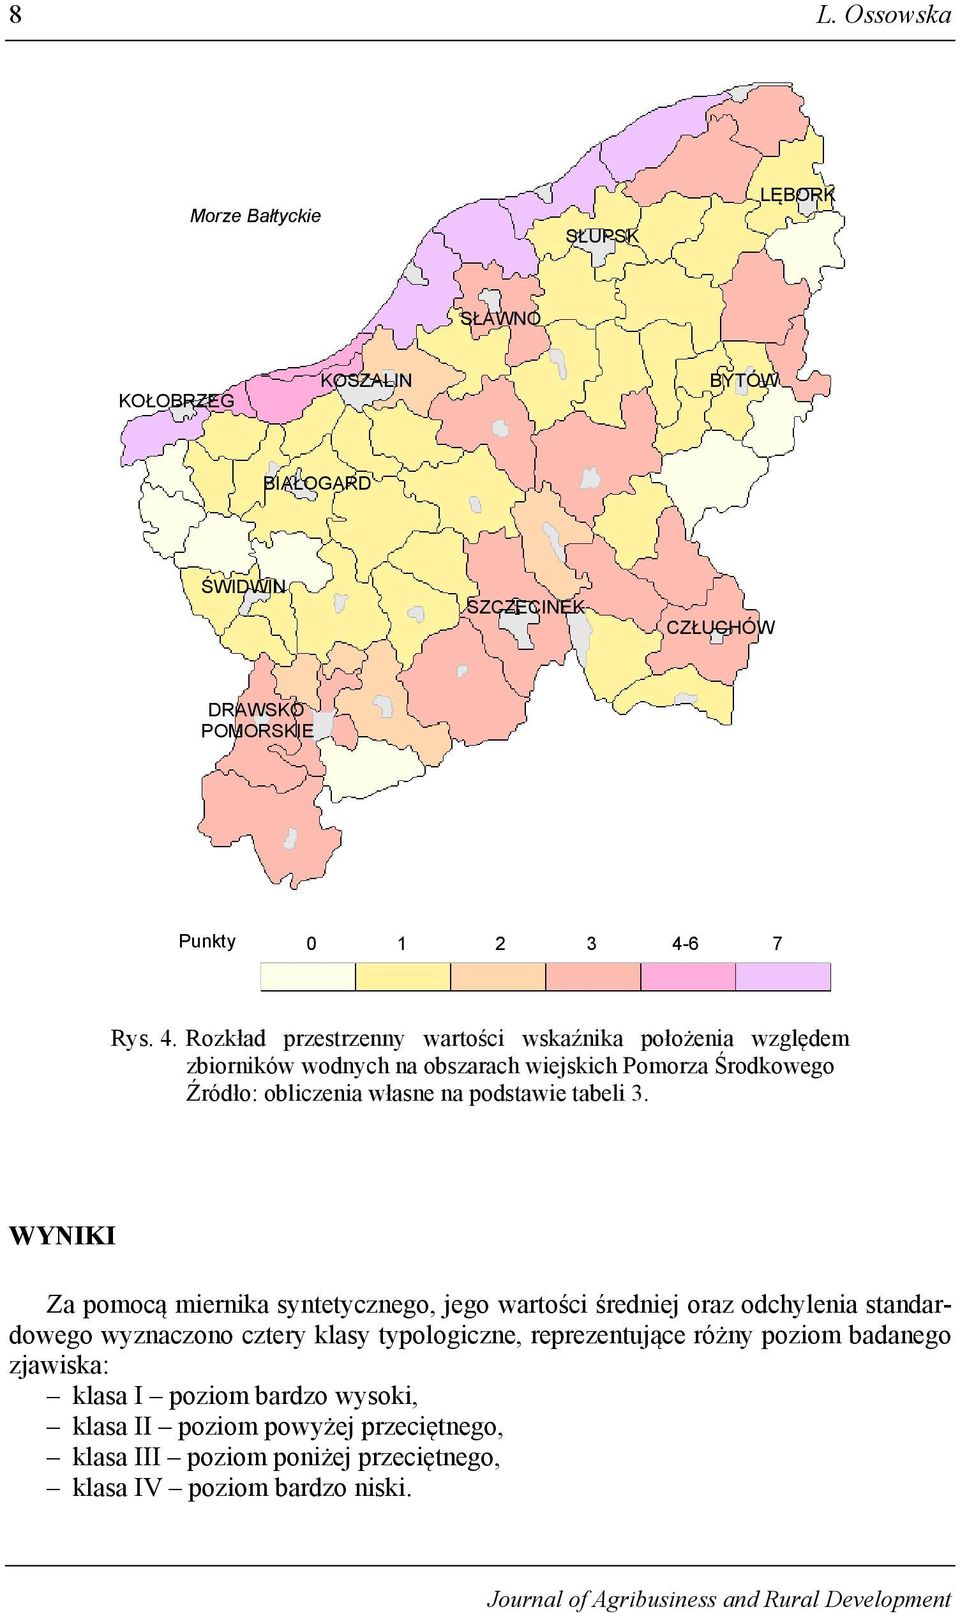 Rozkład przestrzenny wartości wskaźnika położenia względem zbiorników wodnych na obszarach wiejskich Pomorza Środkowego Źródło: obliczenia własne na podstawie tabeli 3.